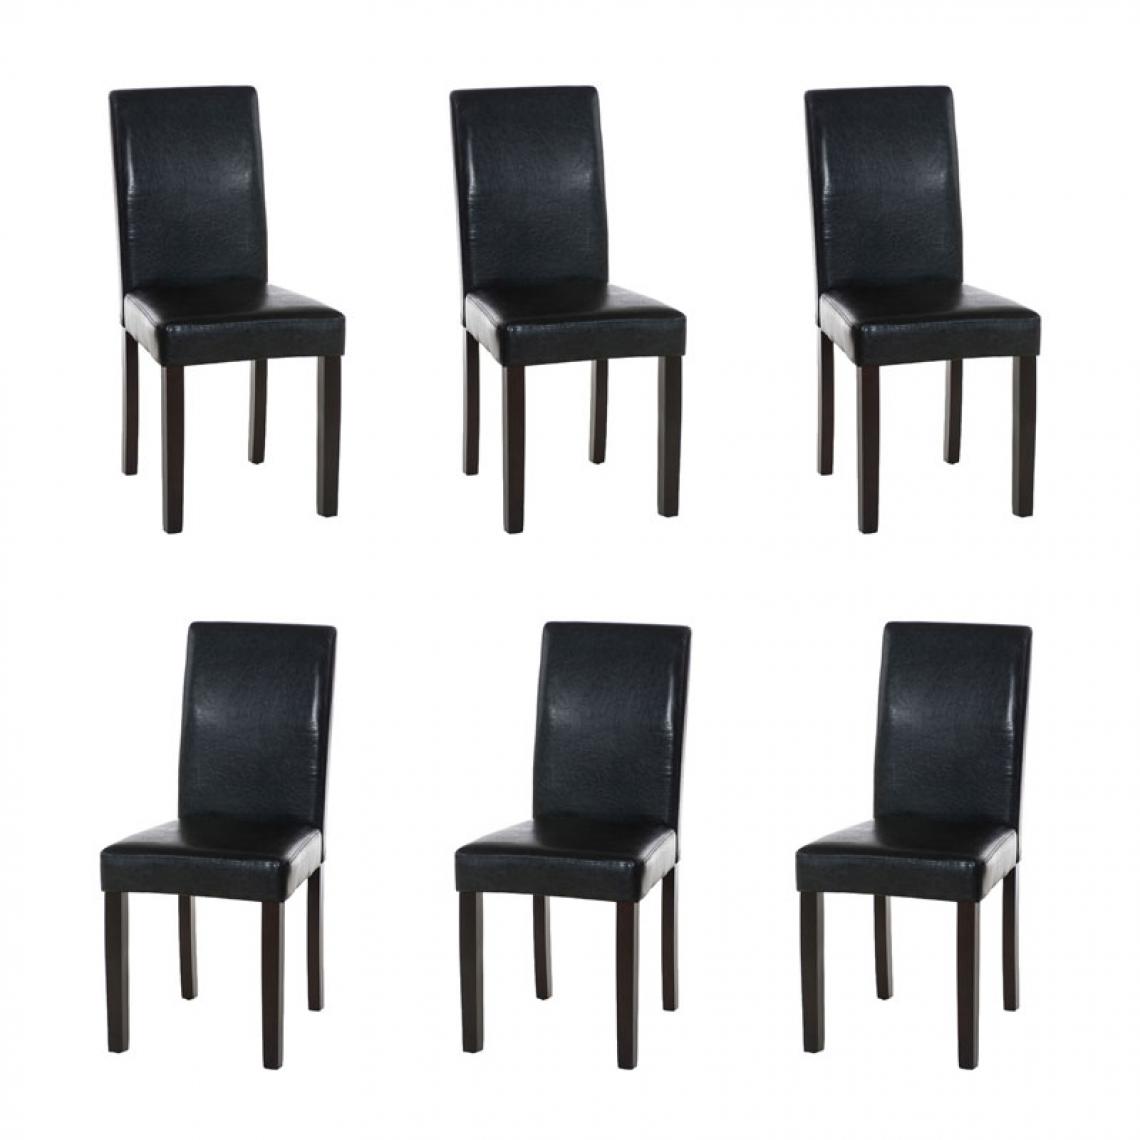 Icaverne - Magnifique Lot de 6 chaises de salle à manger gamme Rabat marron foncé couleur noir - Chaises